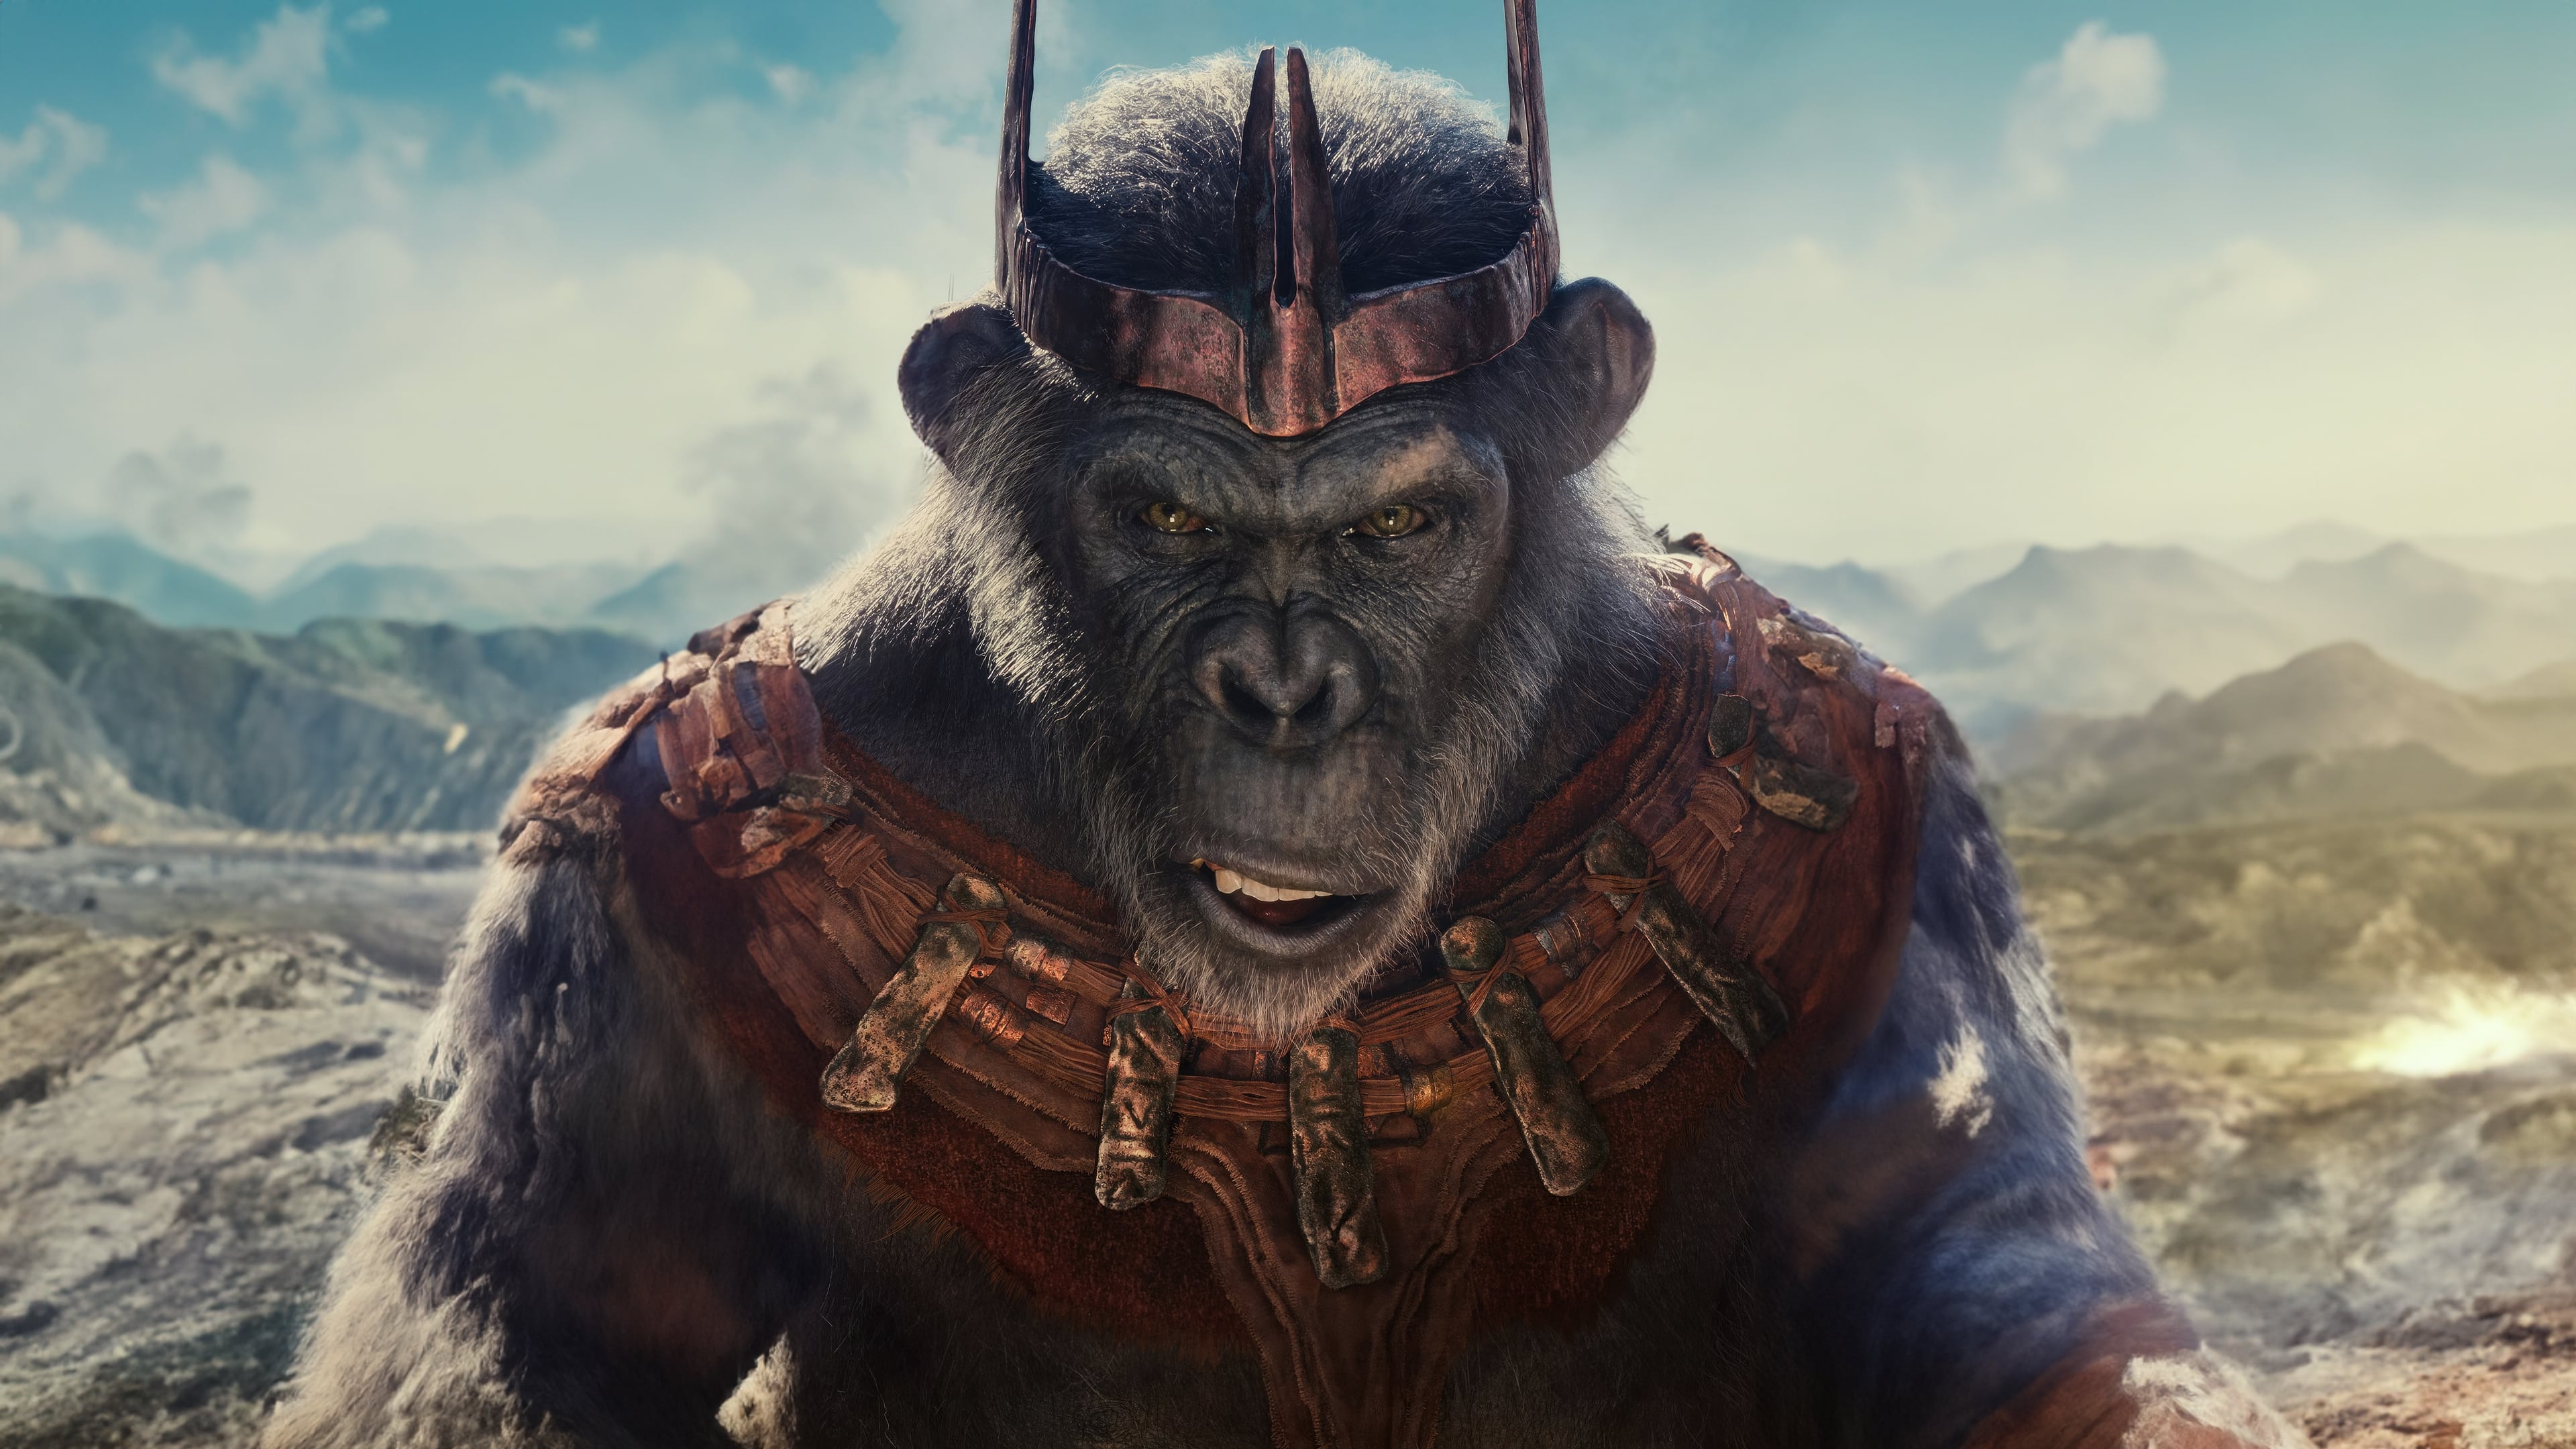 Kráľovstvo planéty opíc (2024)